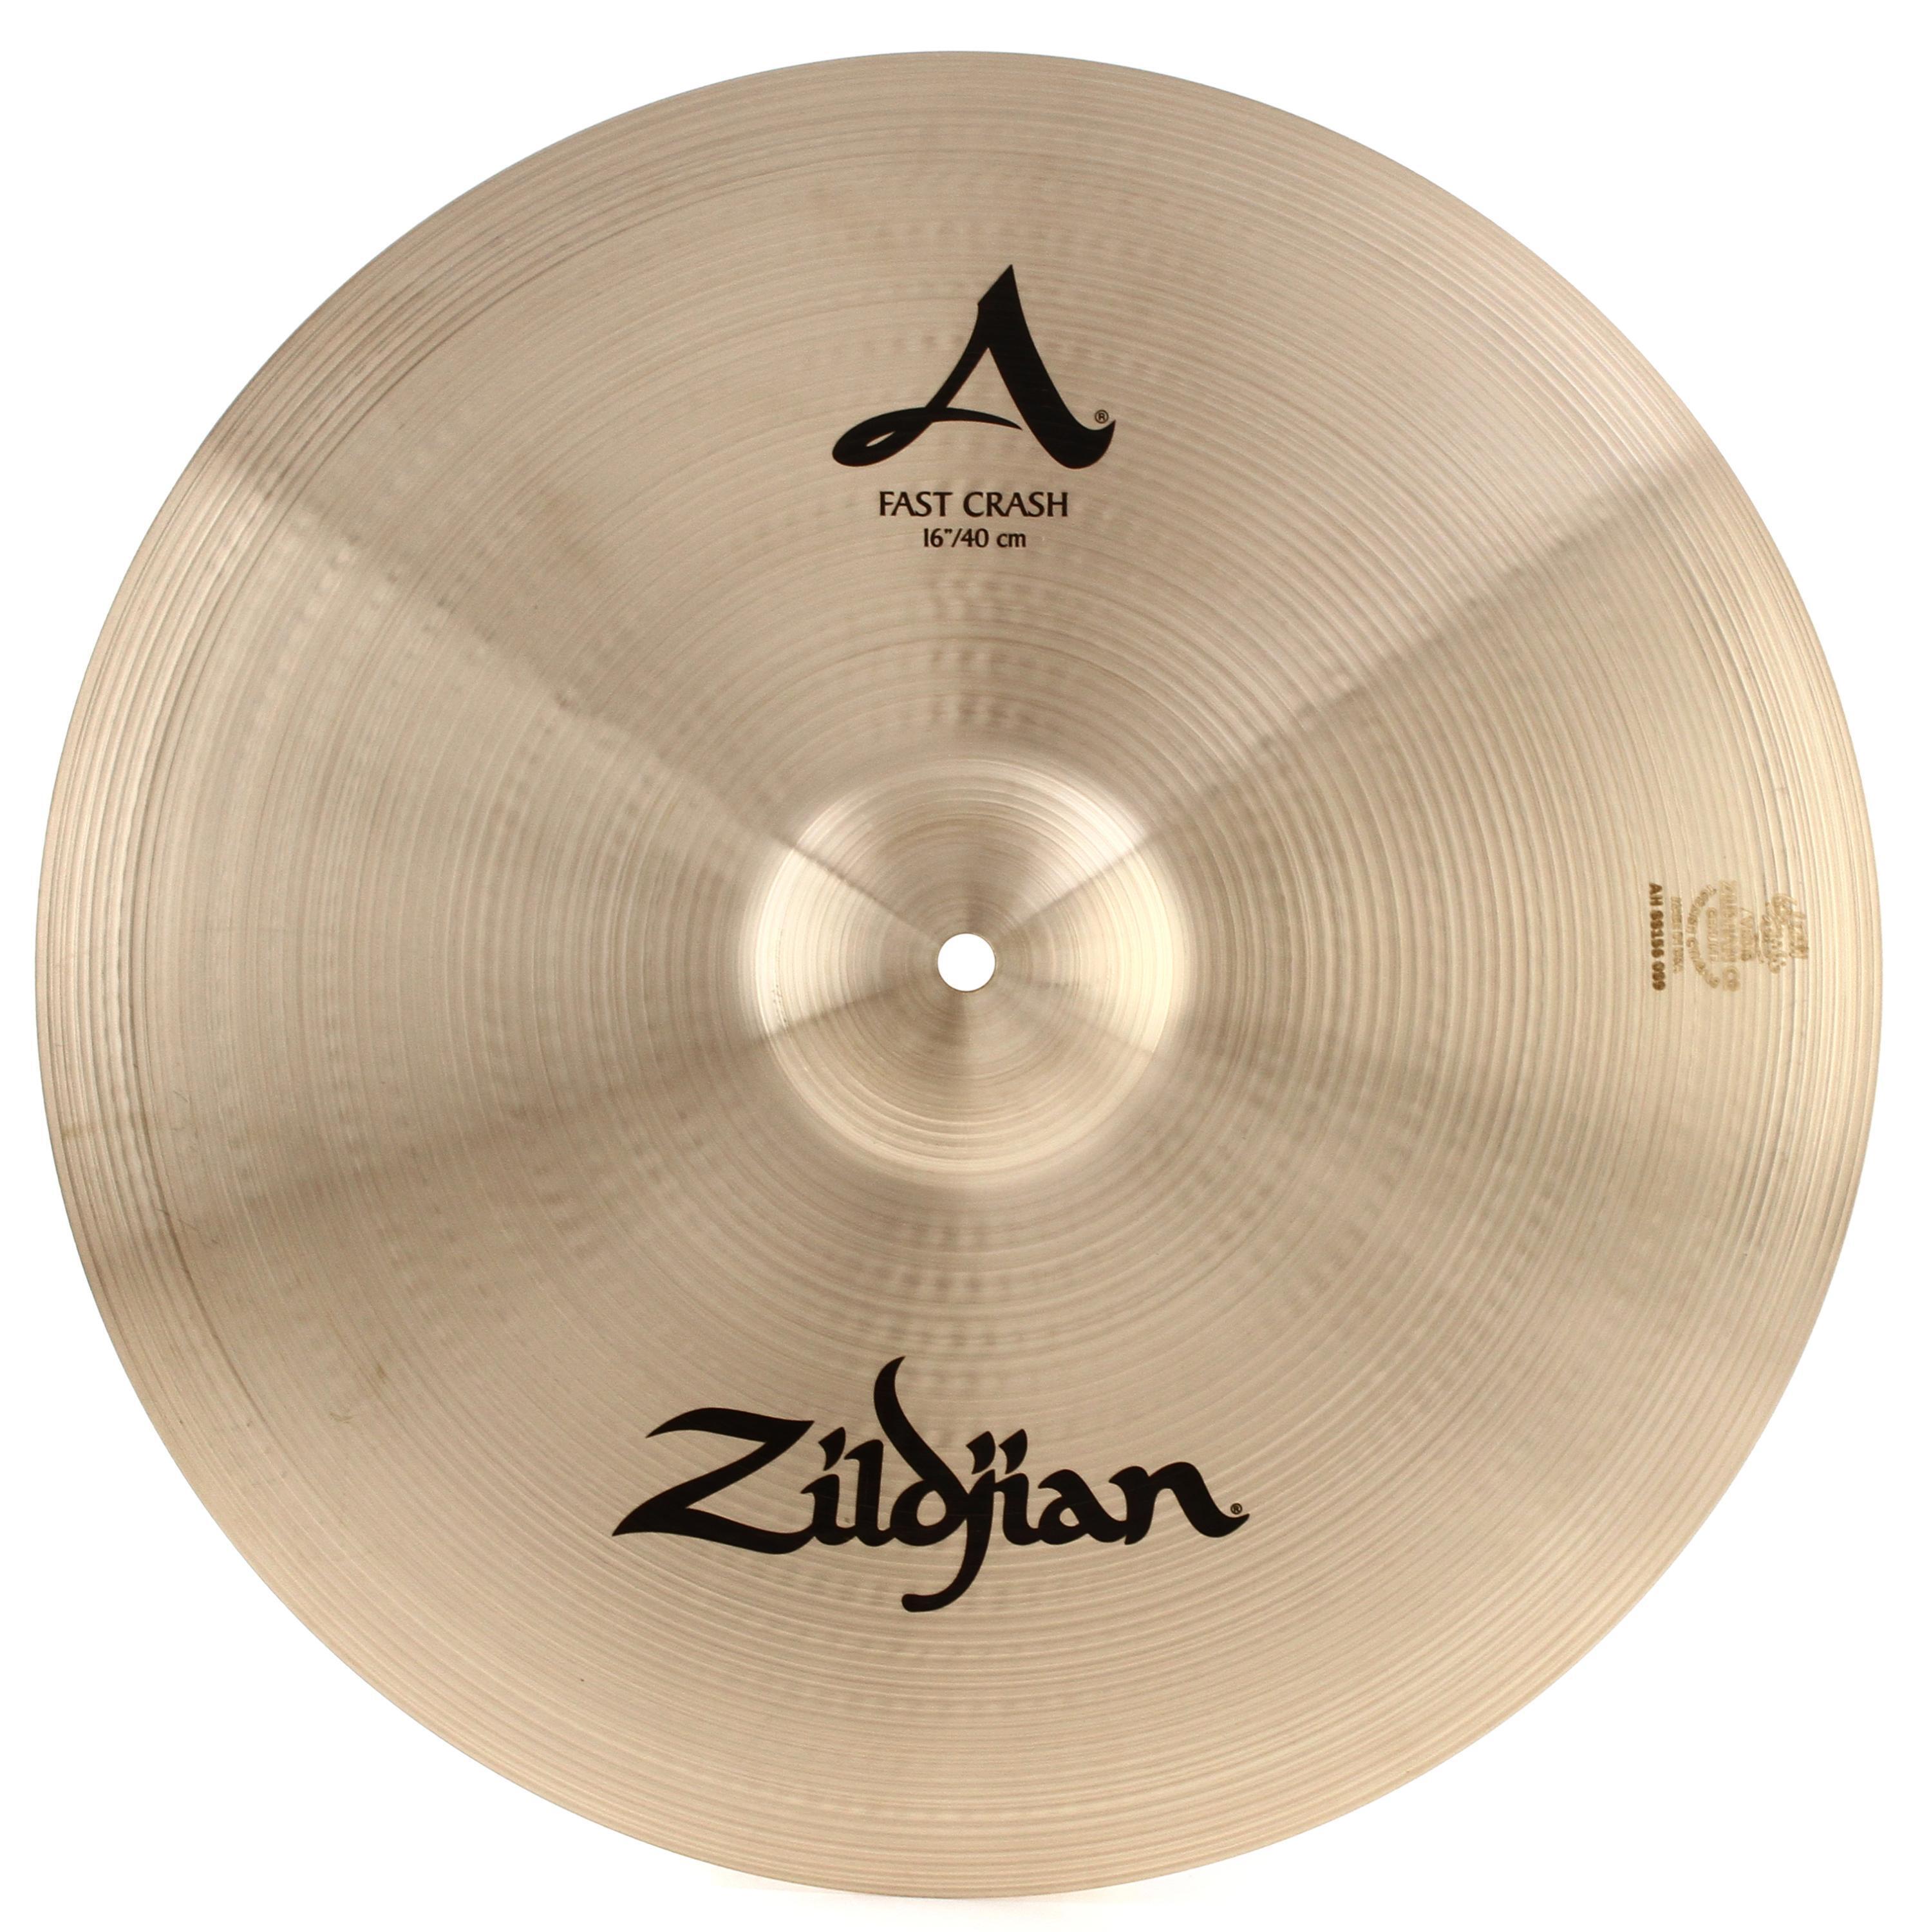 Zildjian 16 inch A Zildjian Fast Crash Cymbal | Sweetwater